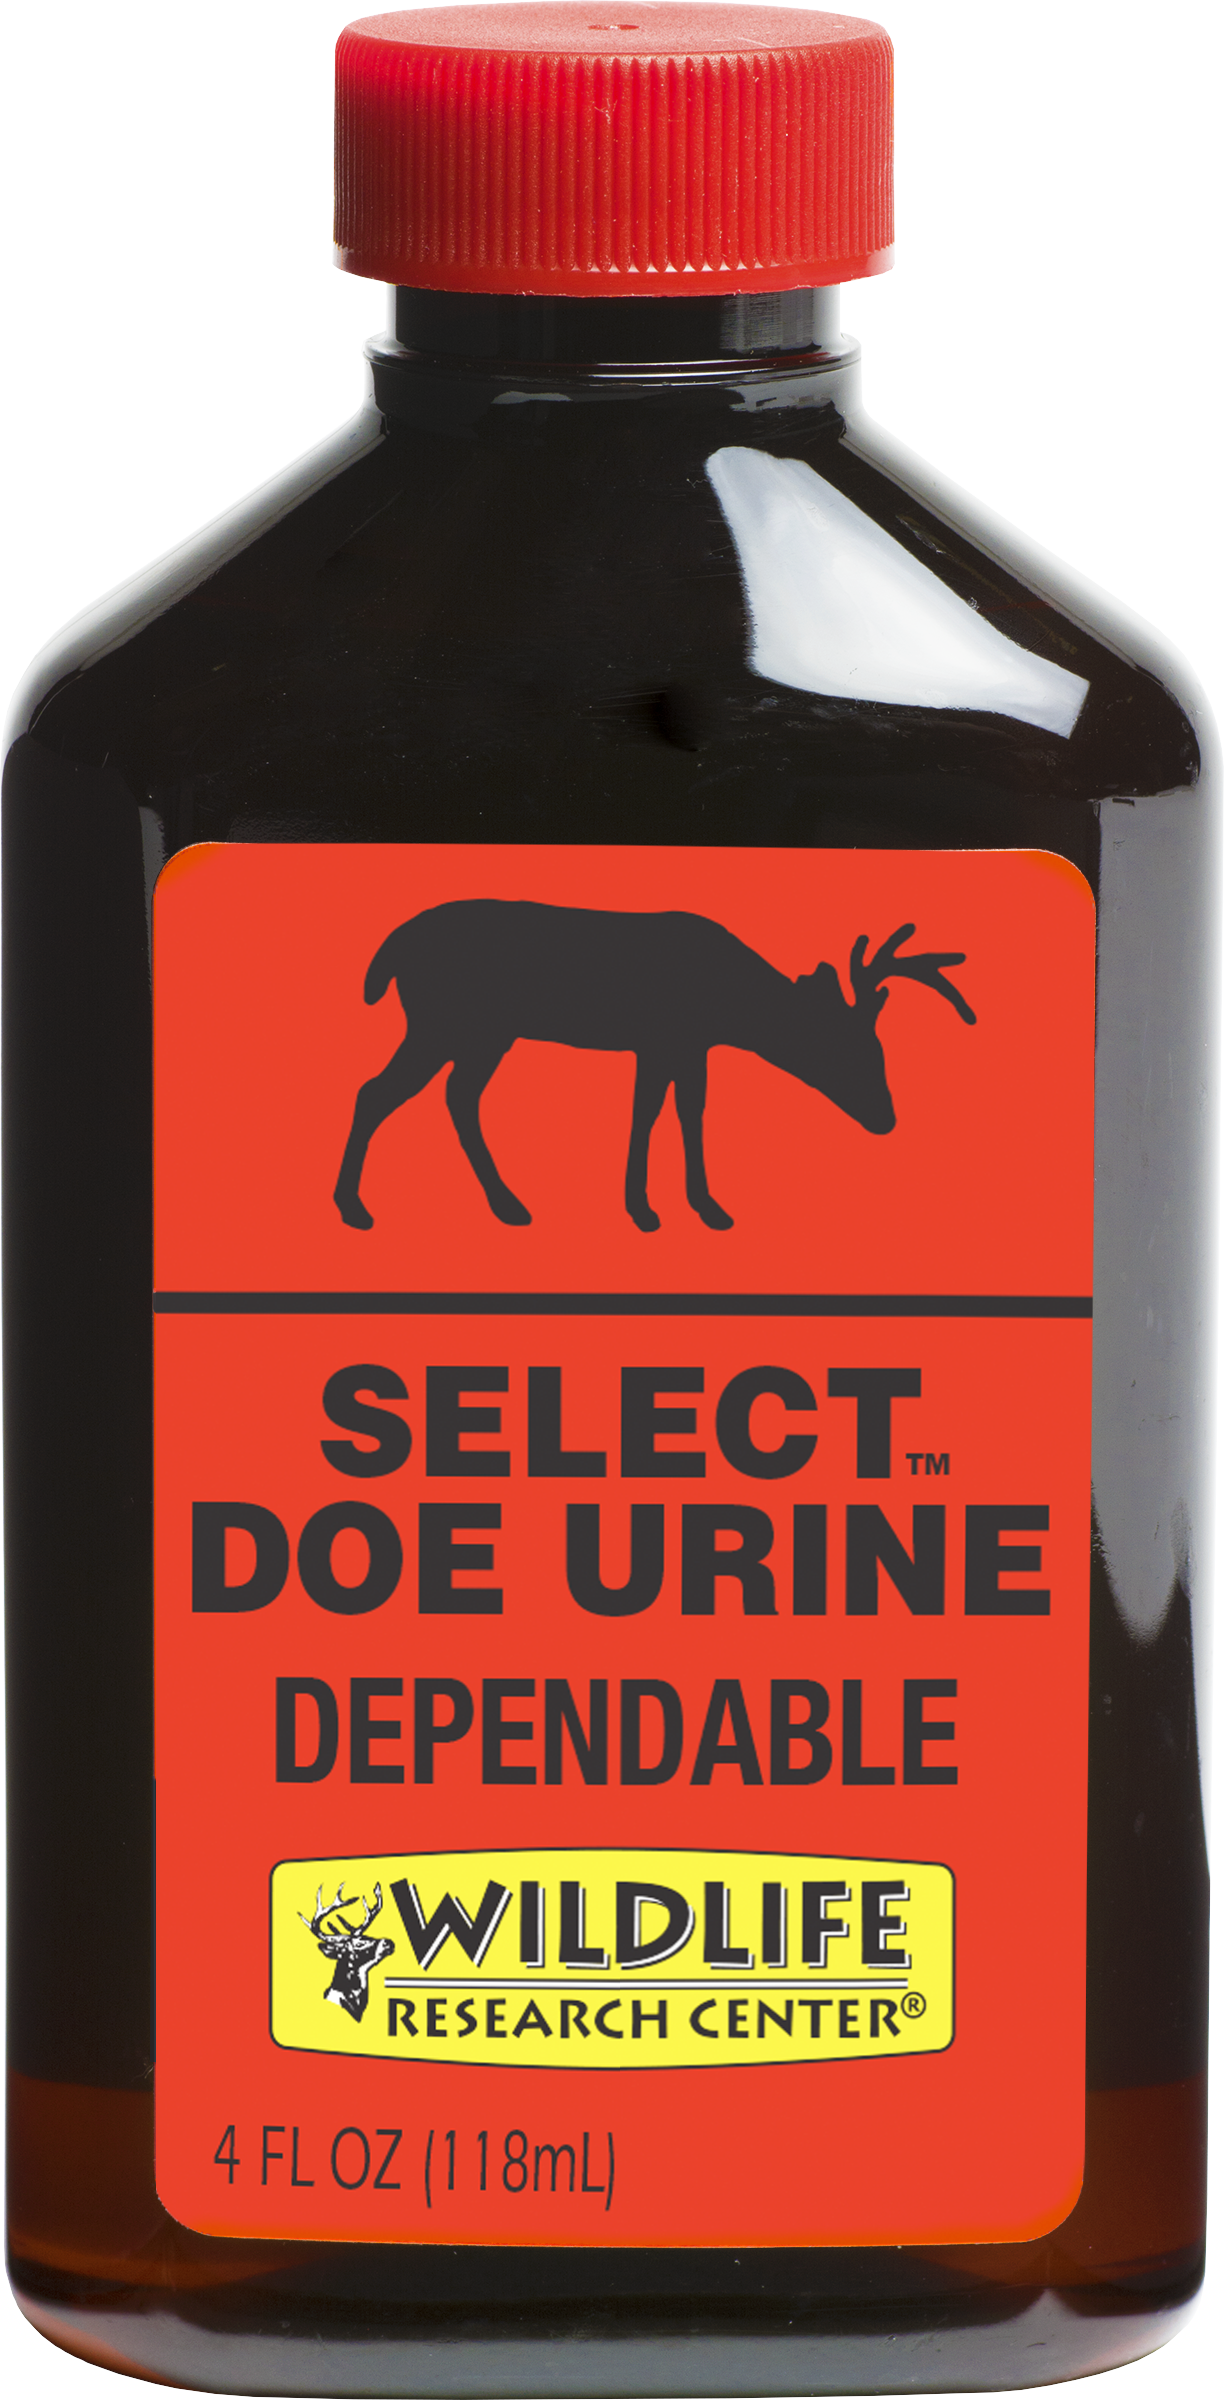 Select Doe Urine™